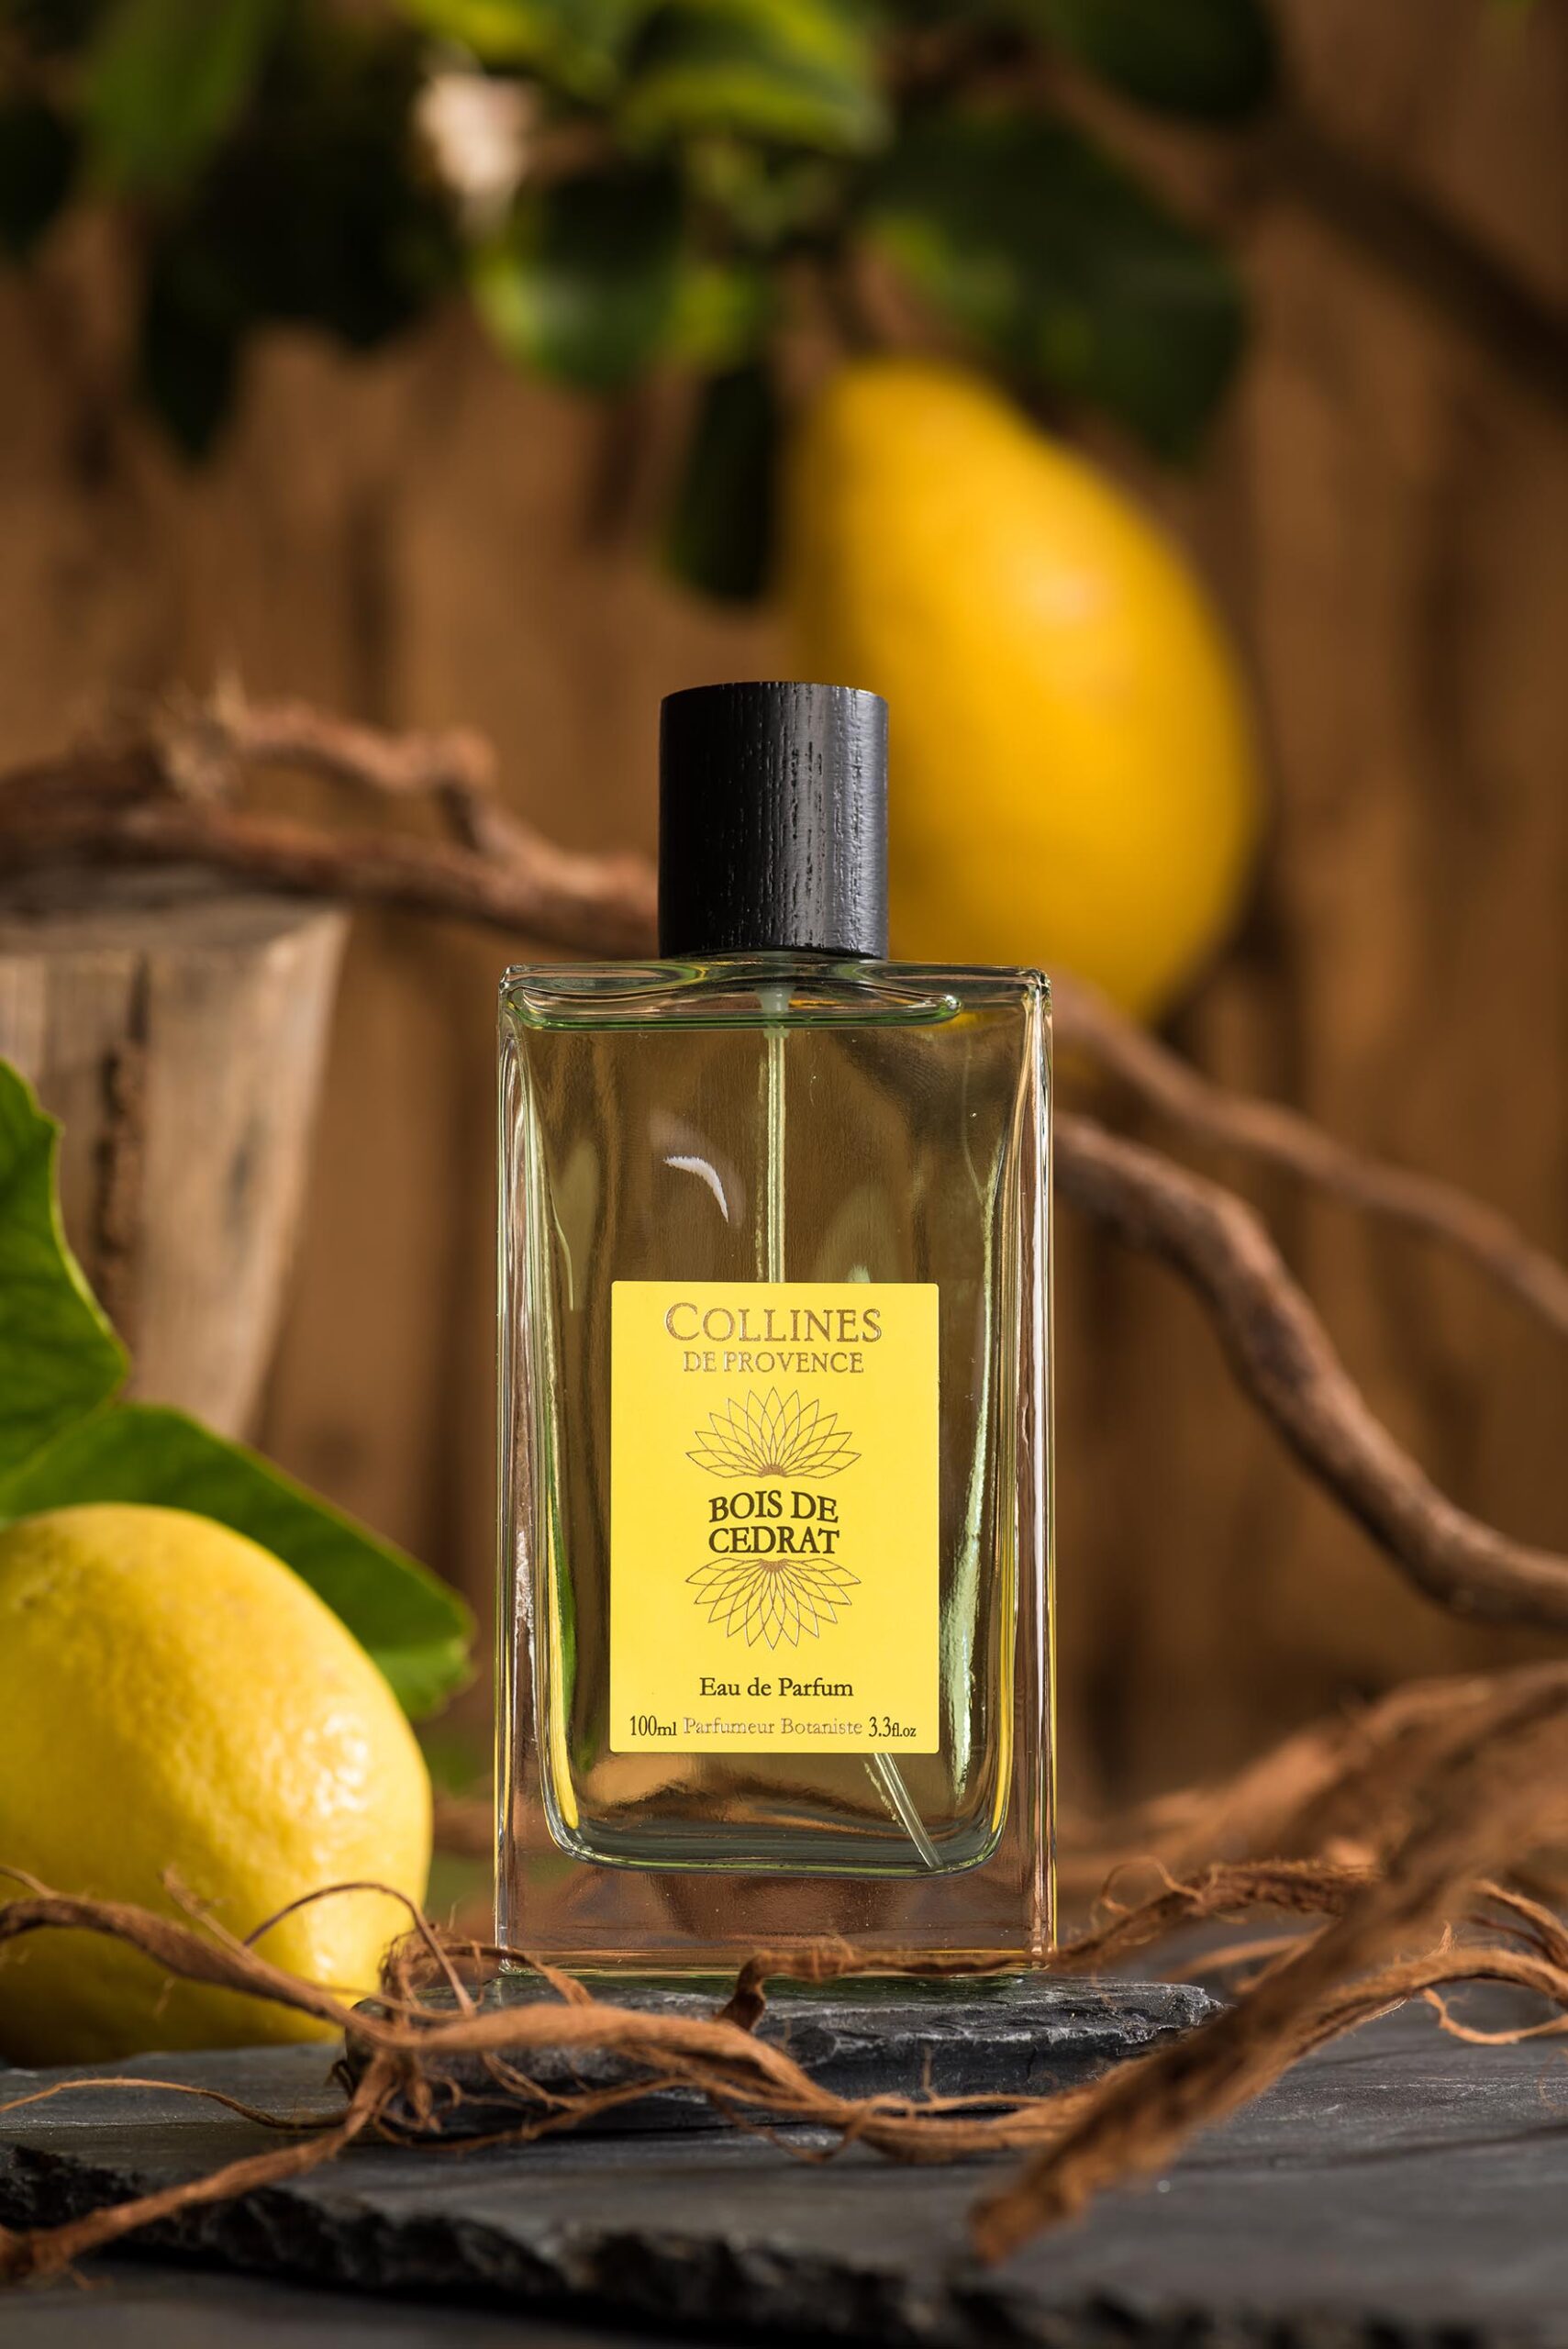 Parfum Collines de Provence Bois de Cédrat dans un décor boisé avec citron